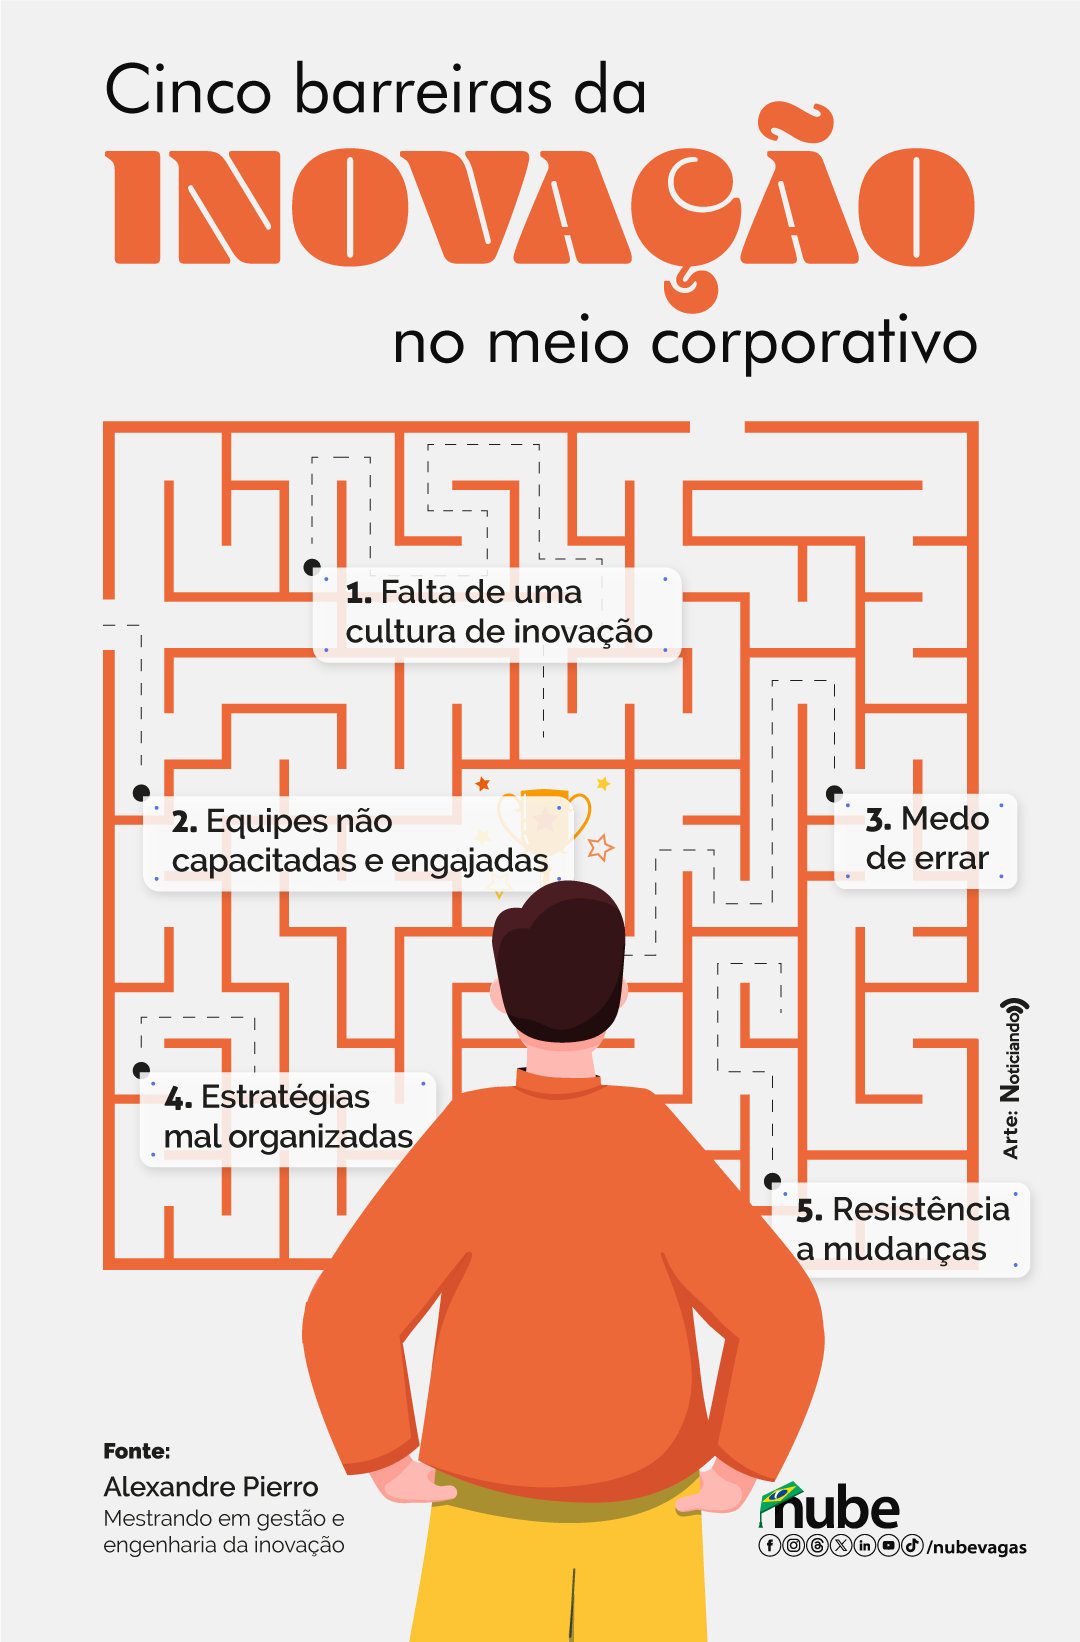 Infográfico sobre as barreiras da inovação no meio corporativo